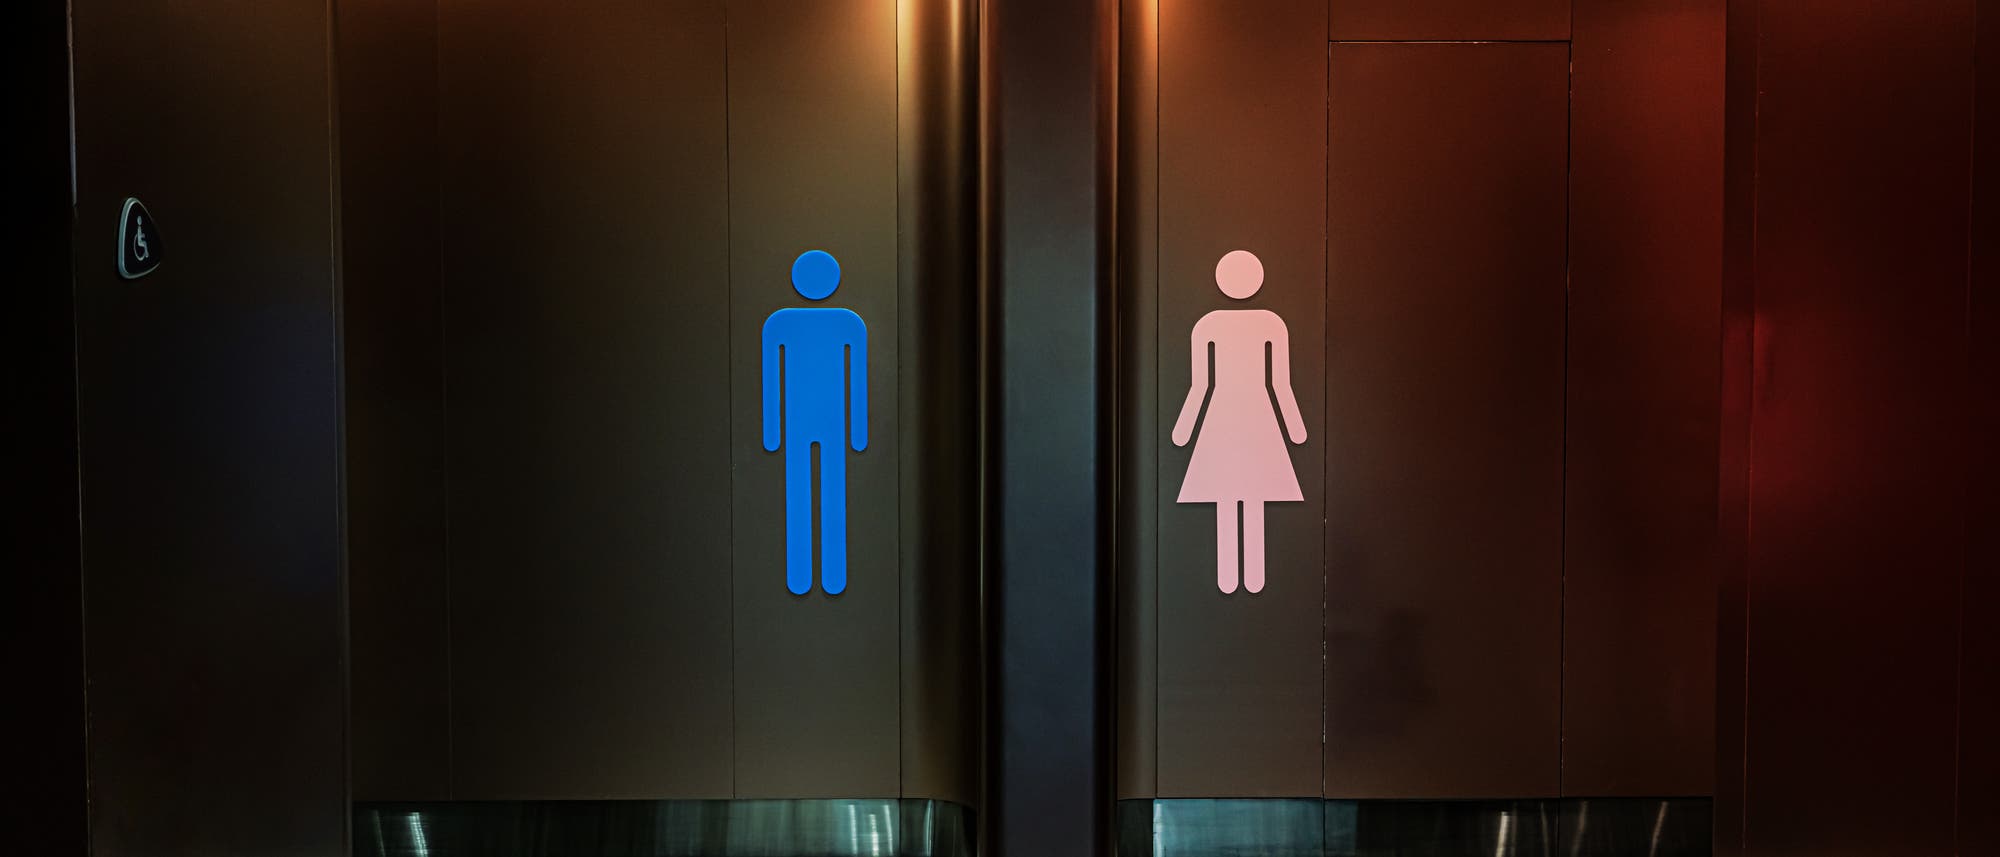 Blick in moderne Männer- und Frauentoilette, deren Eingänge nebeneinander liegen. 